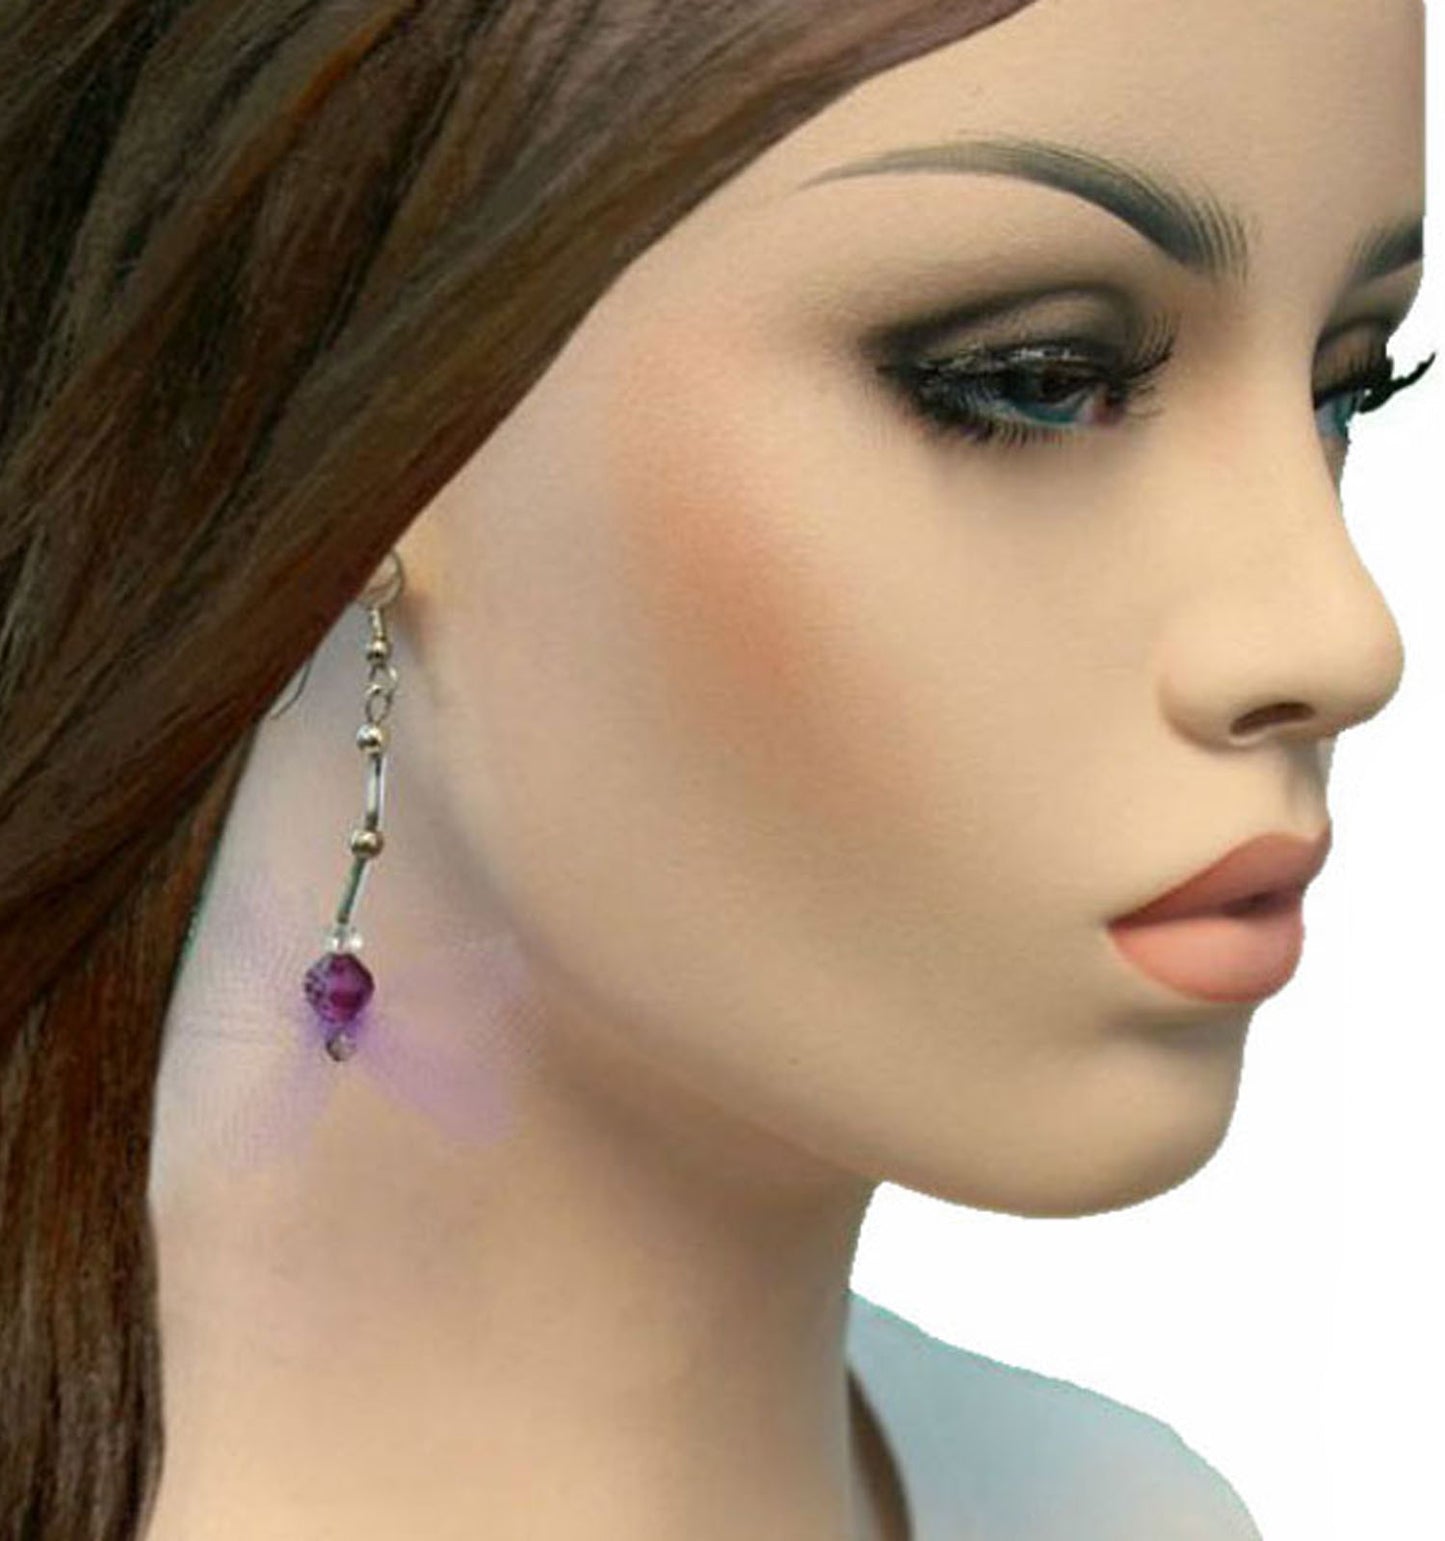 Lavender Purple Tulle Bead Silver Tone Dangle Earrings Pierced Womens Jewelry 3"